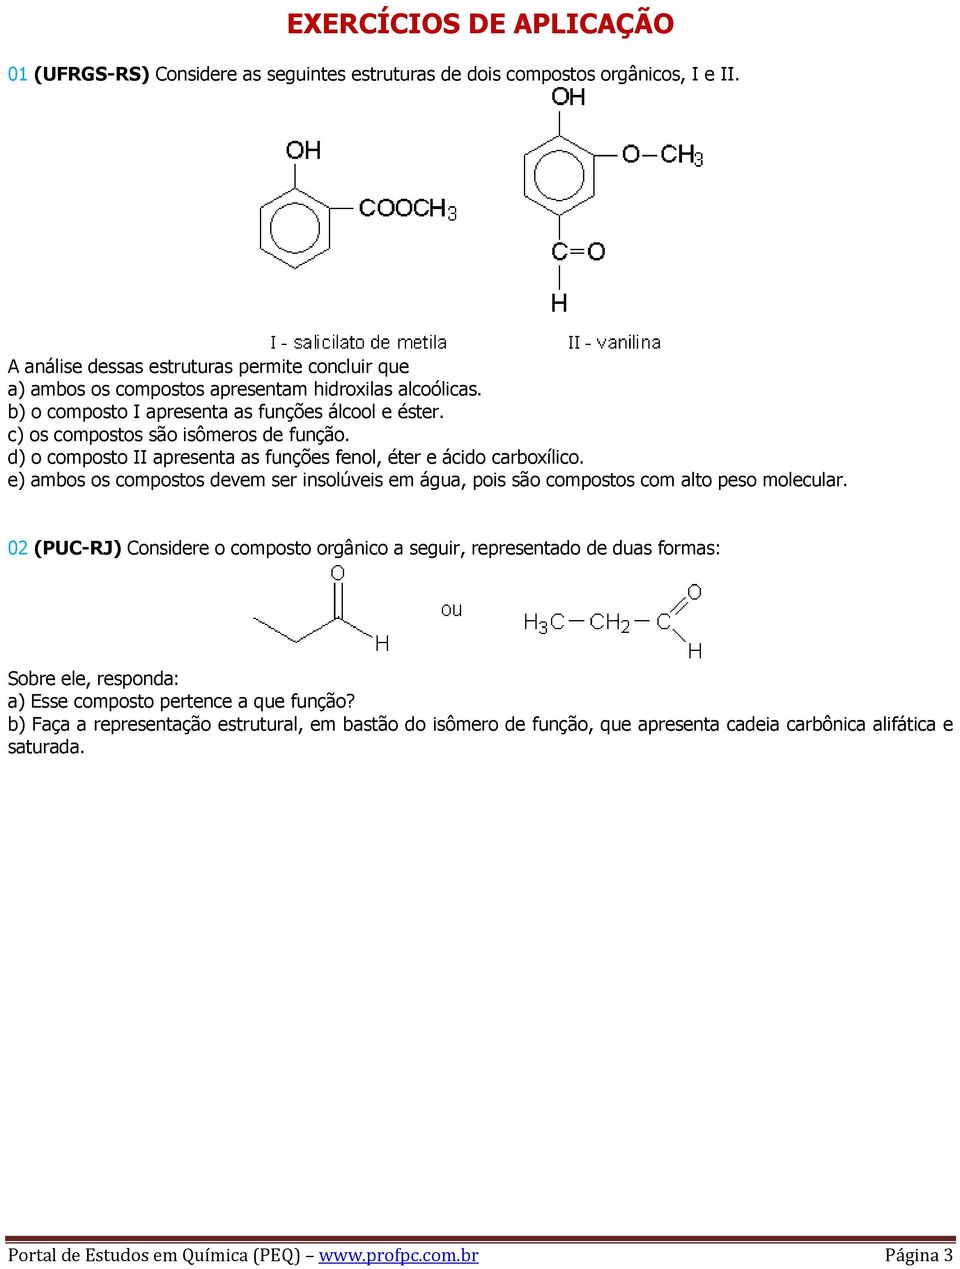 d) o composto II apresenta as funções fenol, éter e ácido carboxílico. e) ambos os compostos devem ser insolúveis em água, pois são compostos com alto peso molecular.